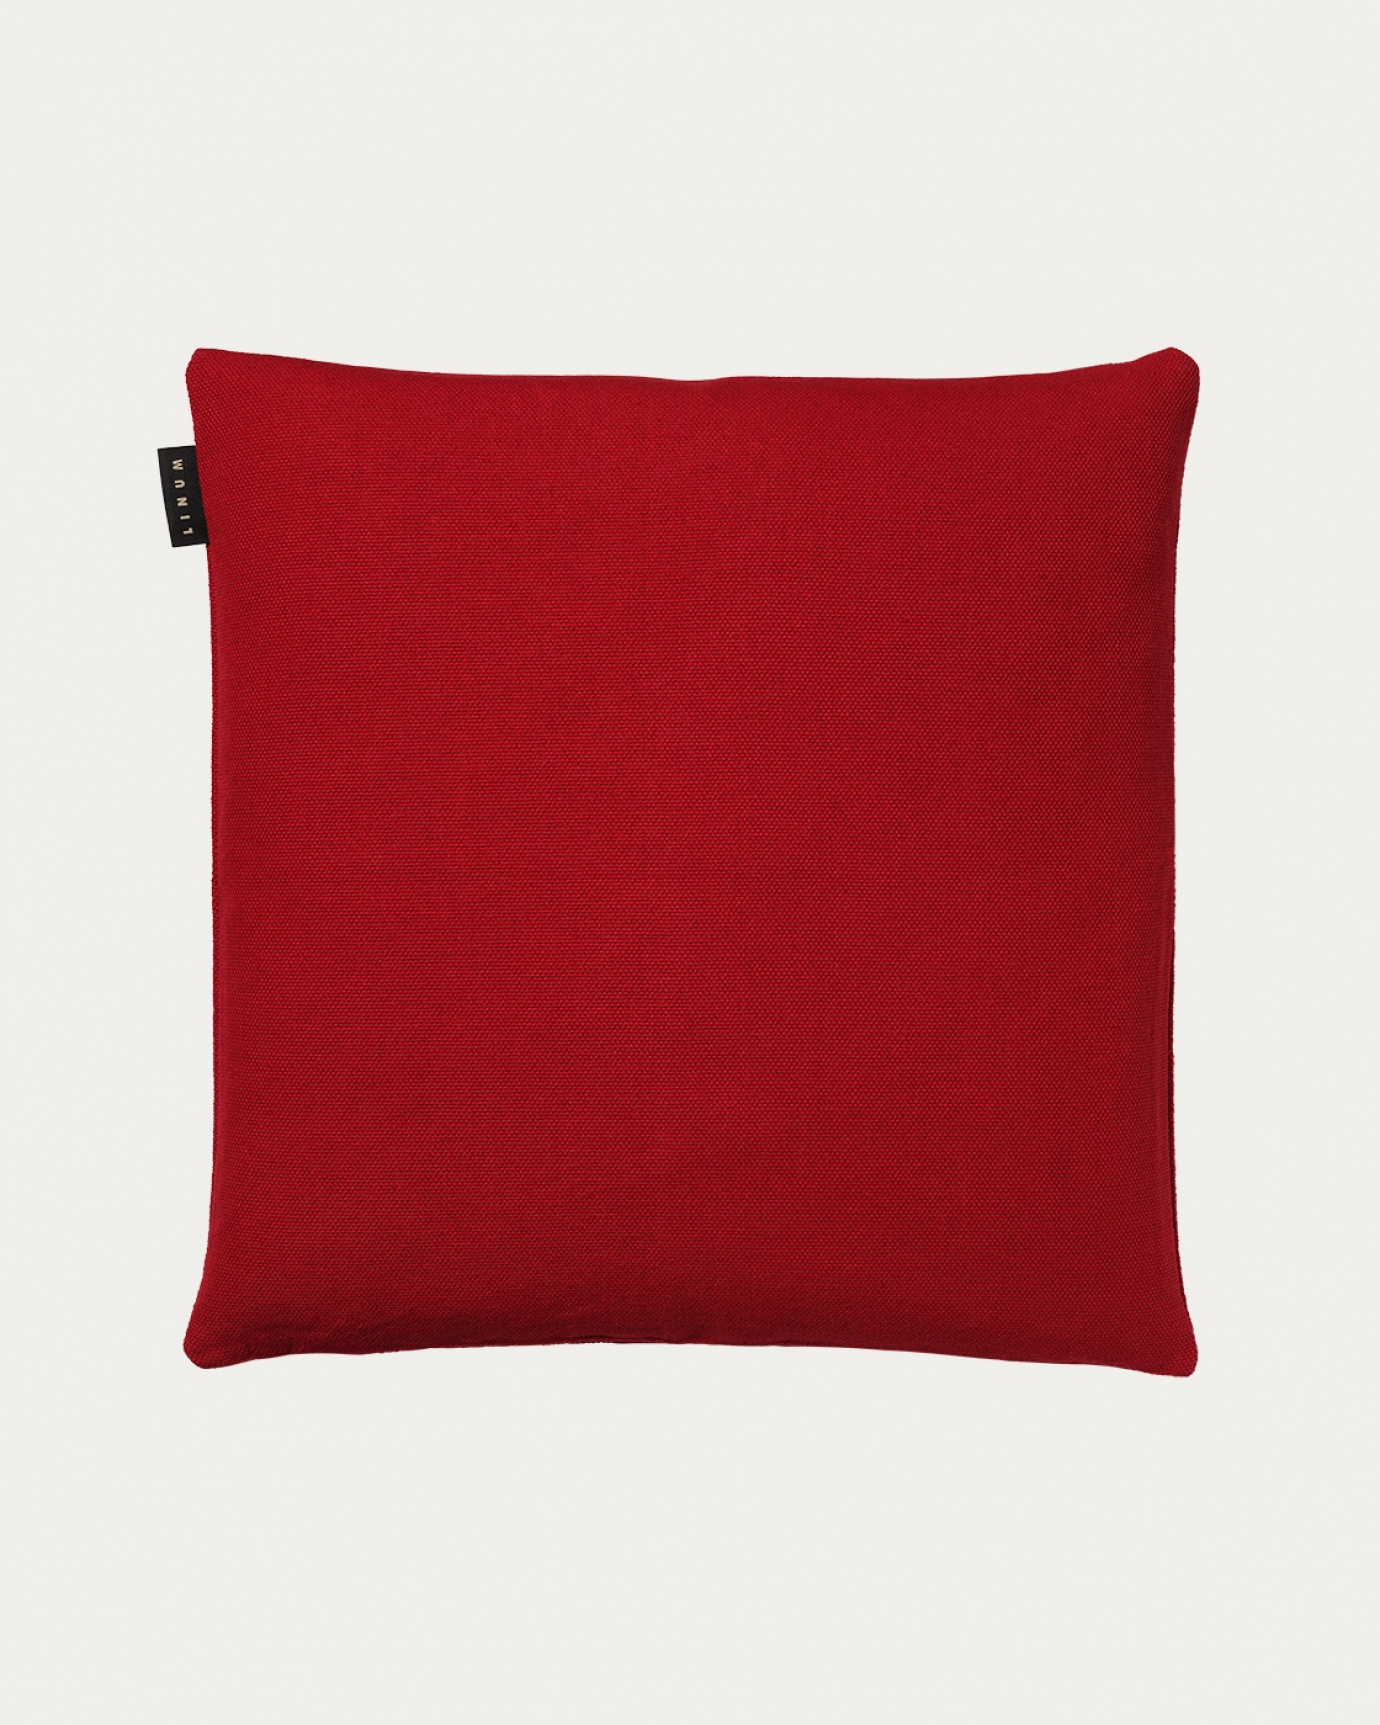 Produktbild röd PEPPER kuddfodral av mjuk bomull från LINUM DESIGN. Lätt att tvätta och hållbar genom generationer. Storlek 50x50 cm.